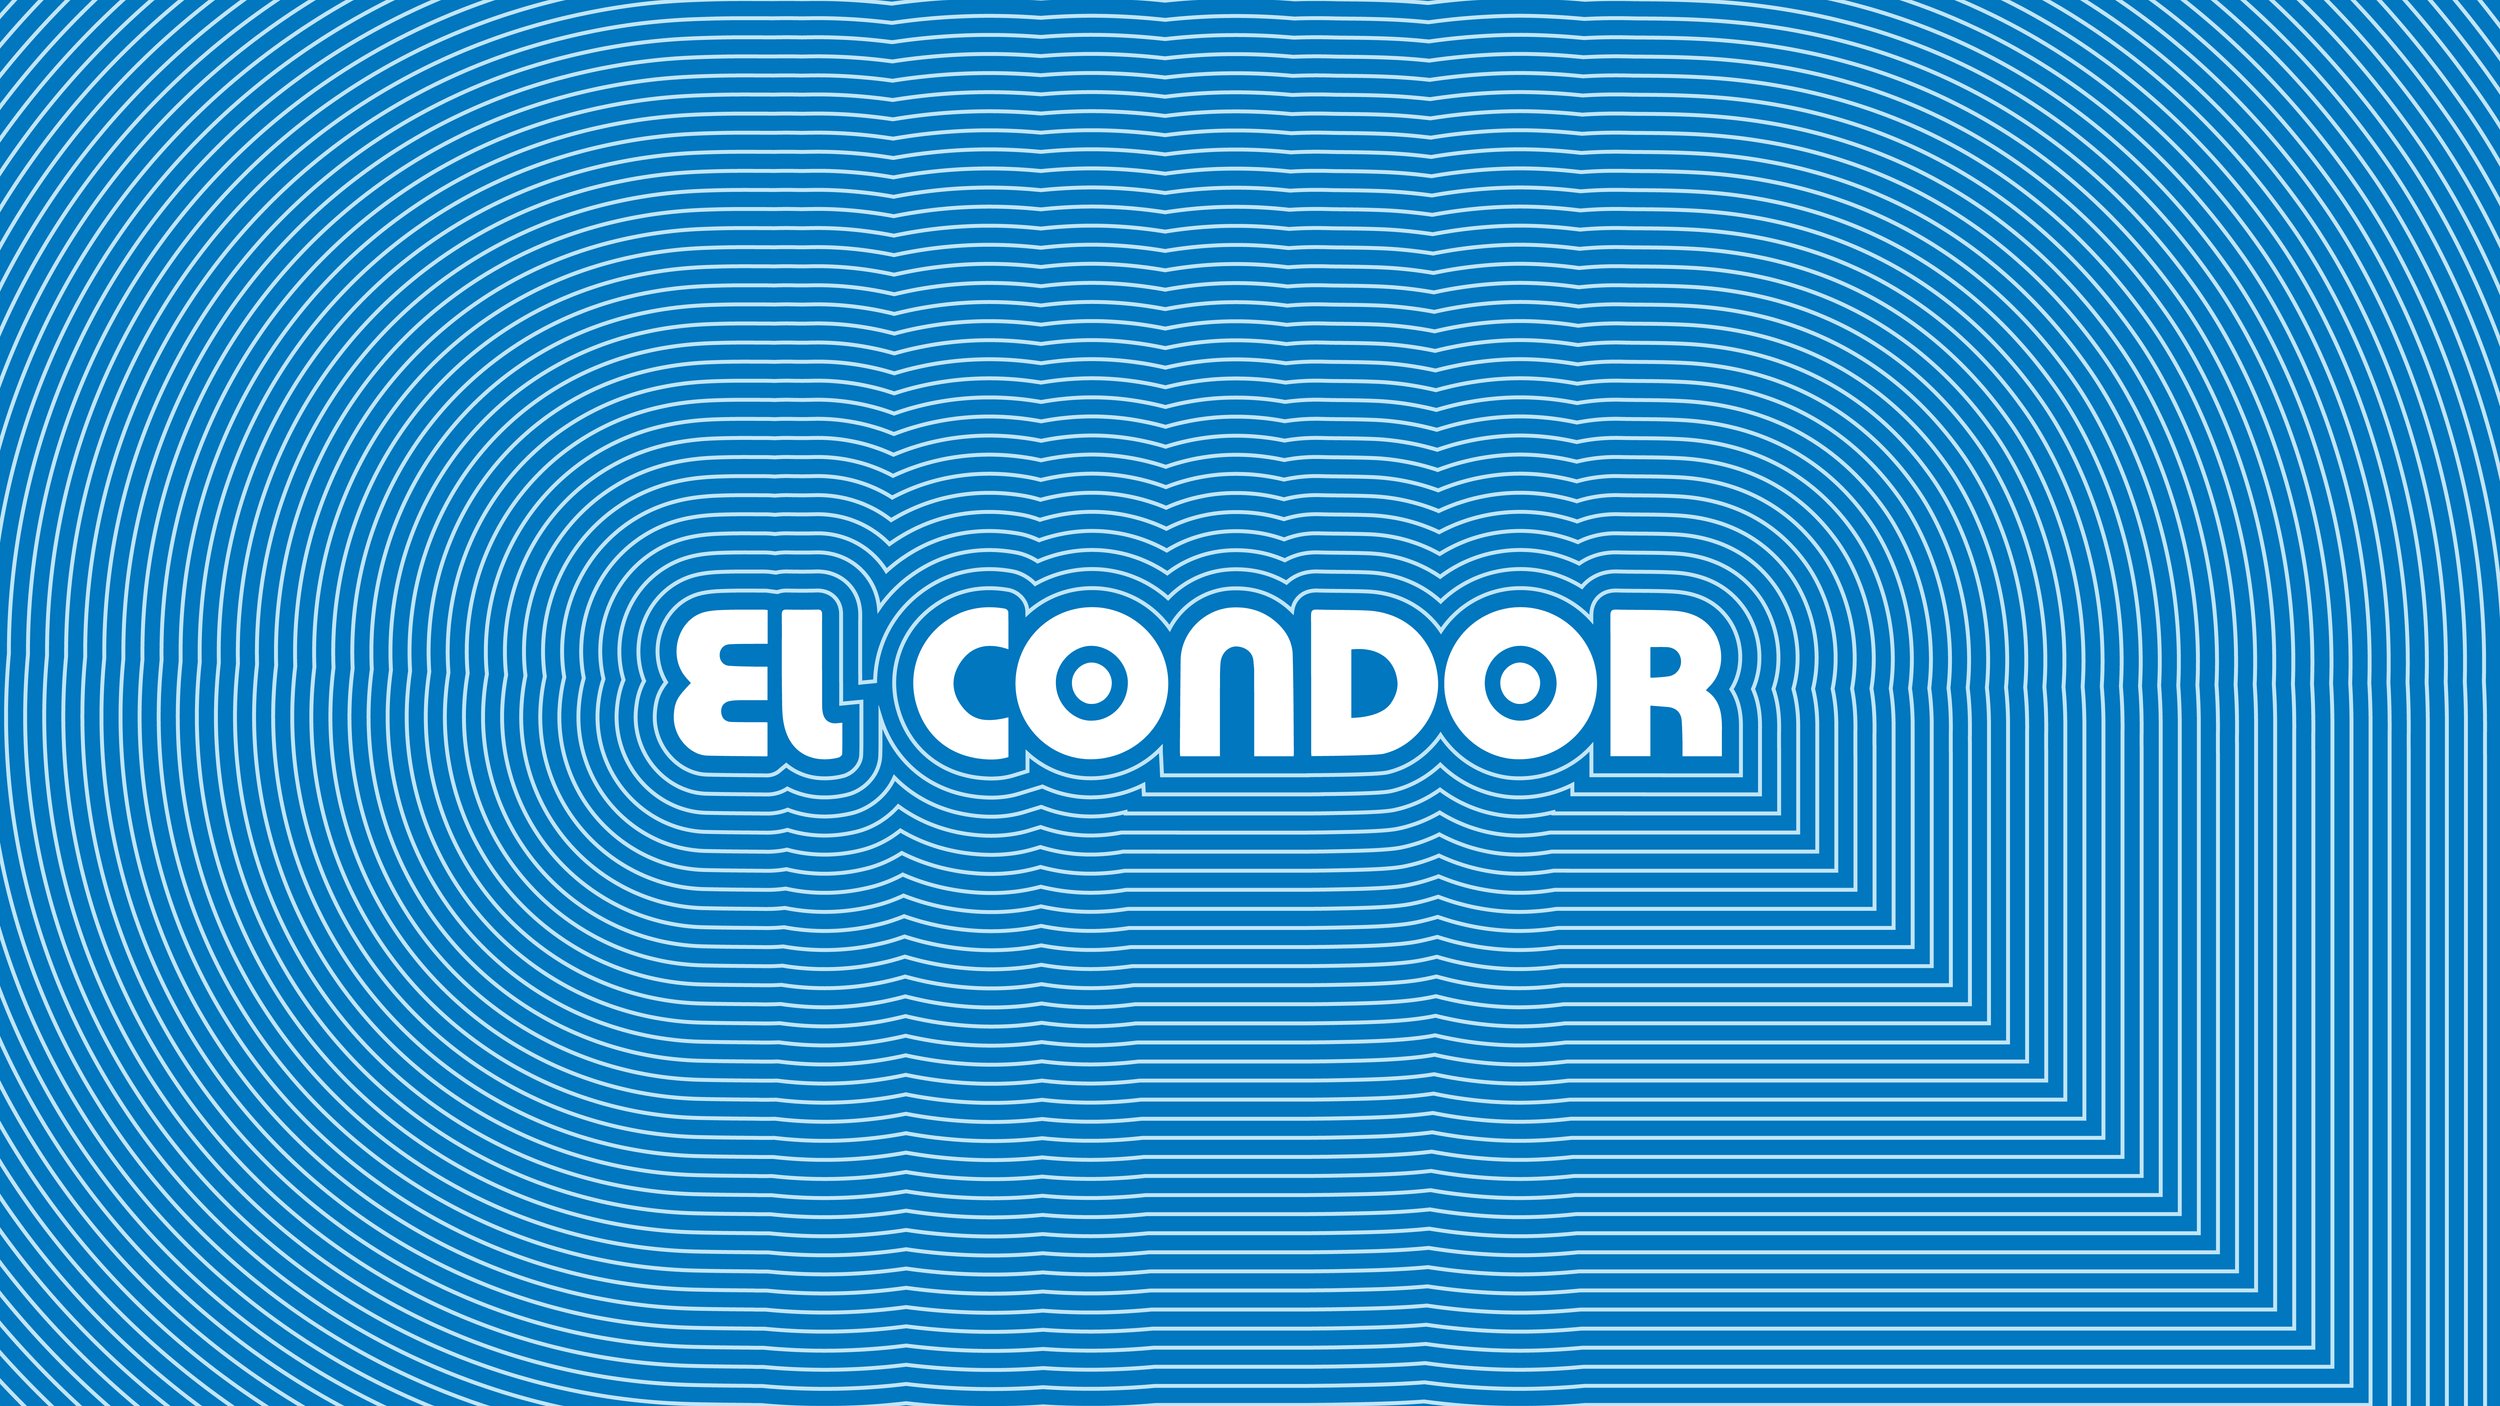 ElCondor_Logomark-01.jpg